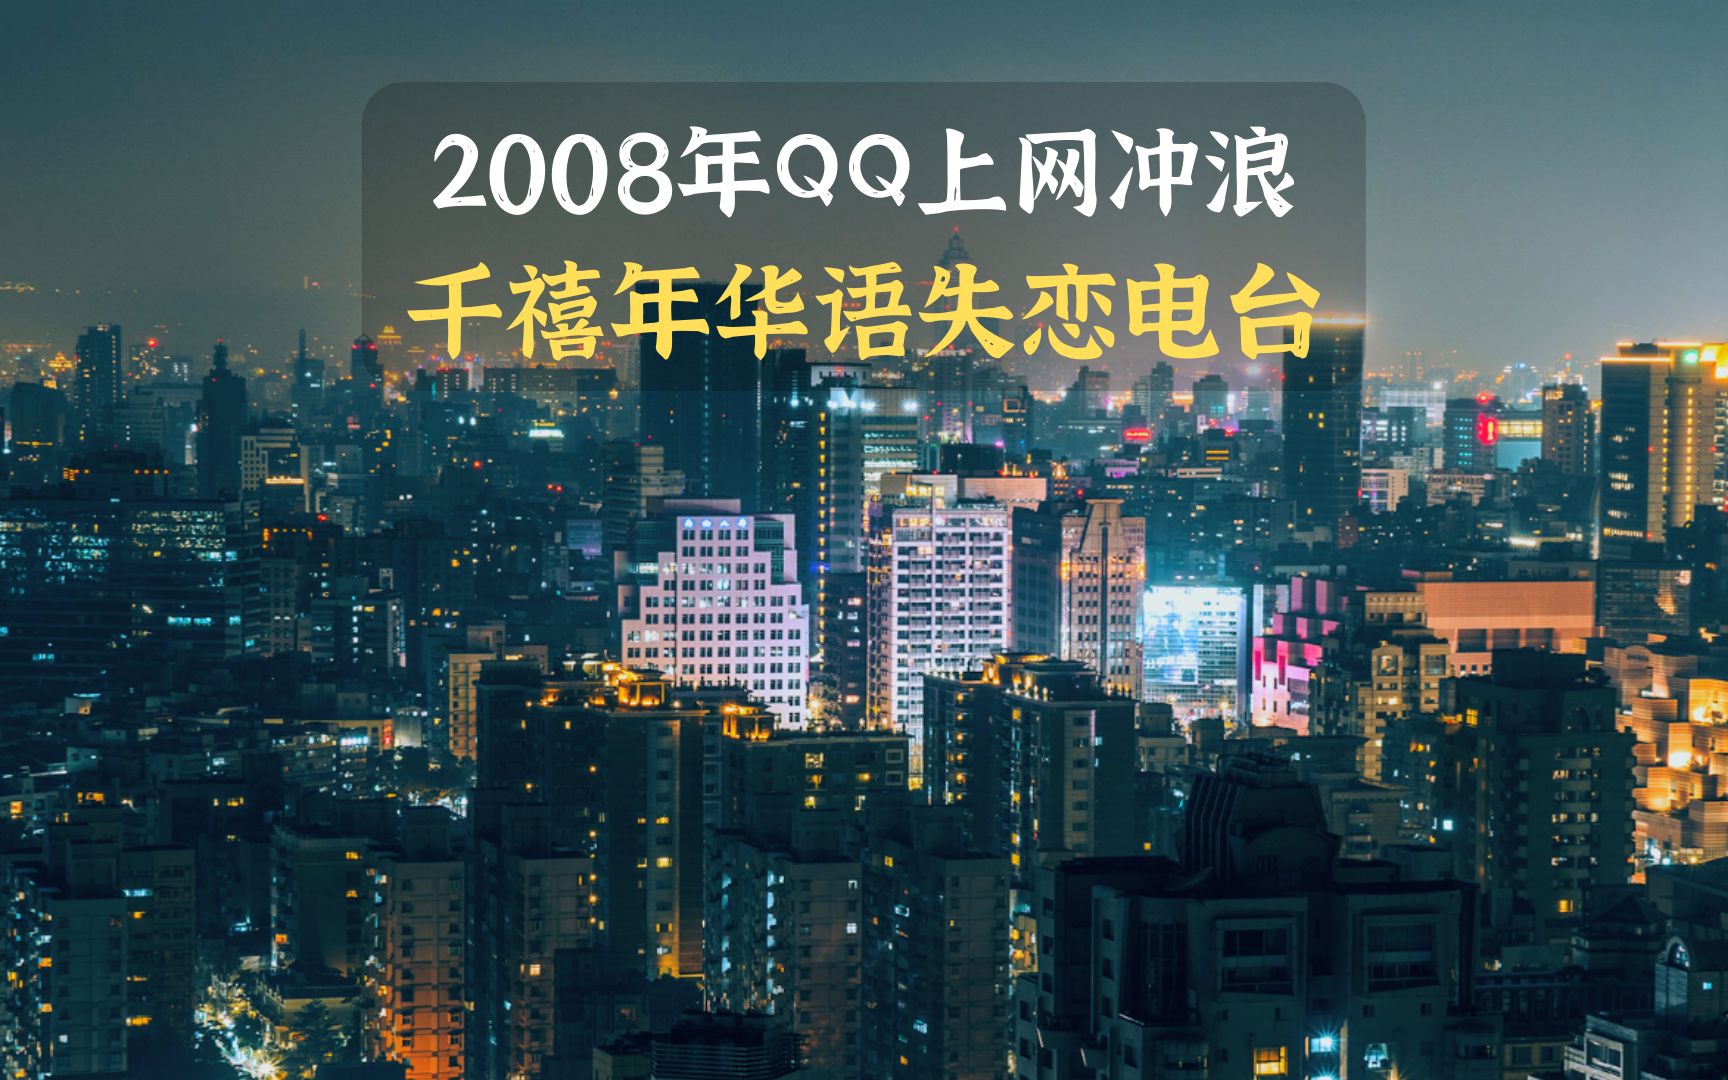 2008年 失恋的你登录QQ聊天室 打开华语电台 千禧年白噪音 Lo-Fi低保真 | 学习 睡眠 放松 | 宇宙第二宅